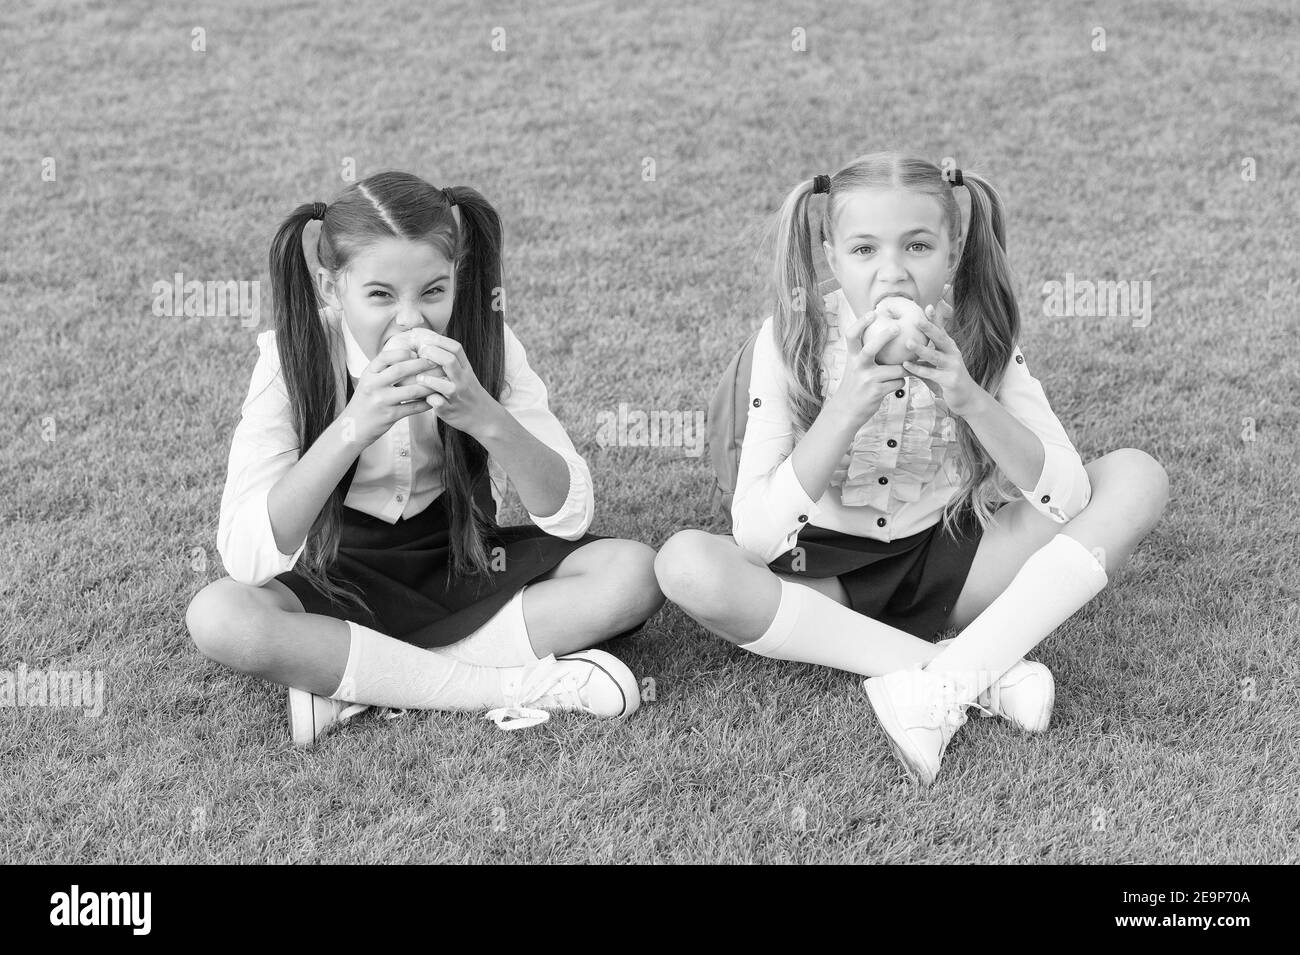 Schoolgirls eating apples relaxing schoolyard, healthy lunch concept. Stock Photo